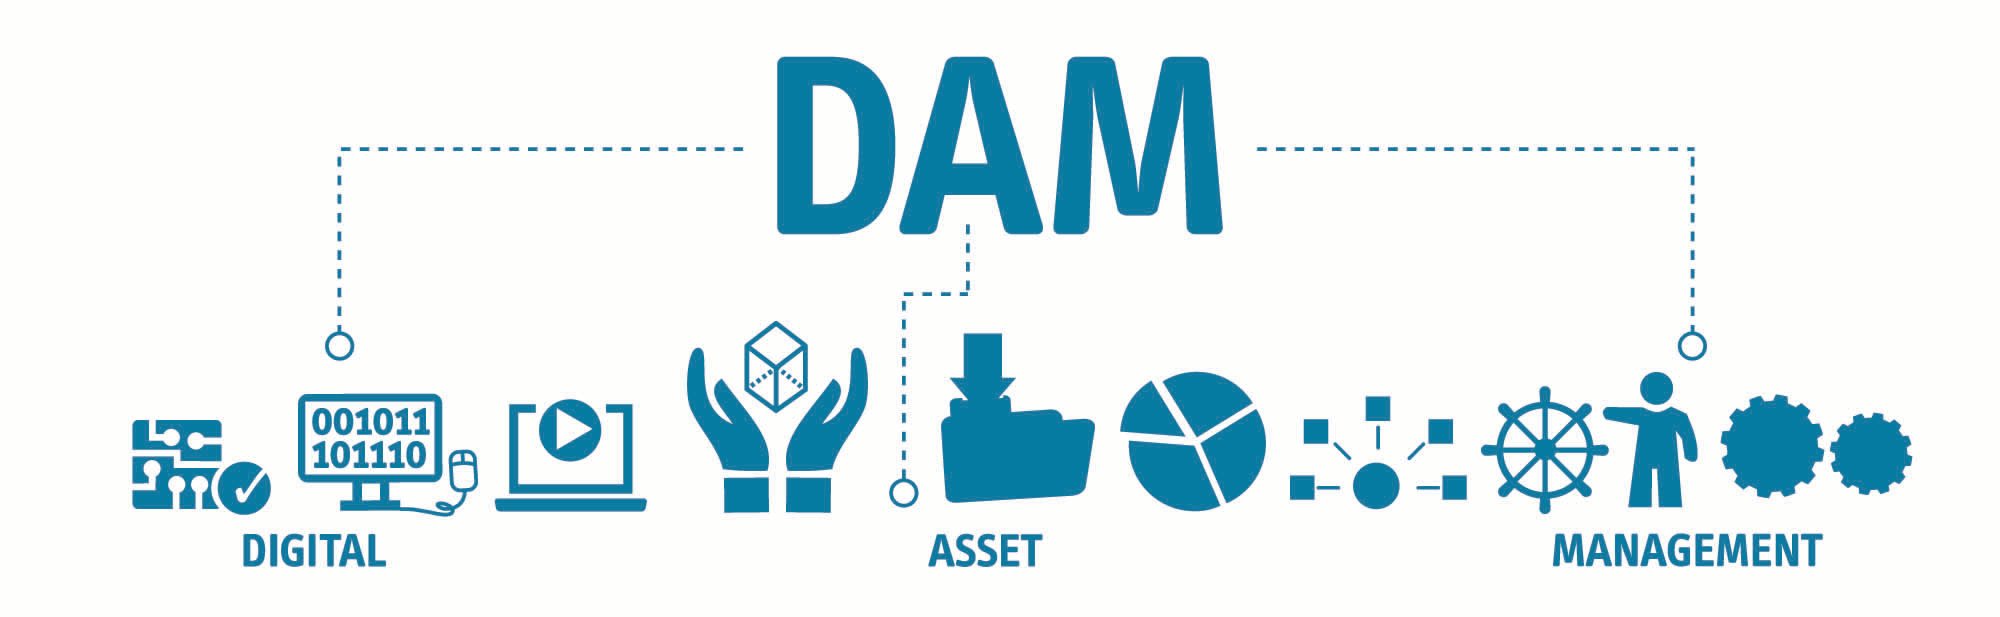 DAM Digital Asset Management Organization Concept